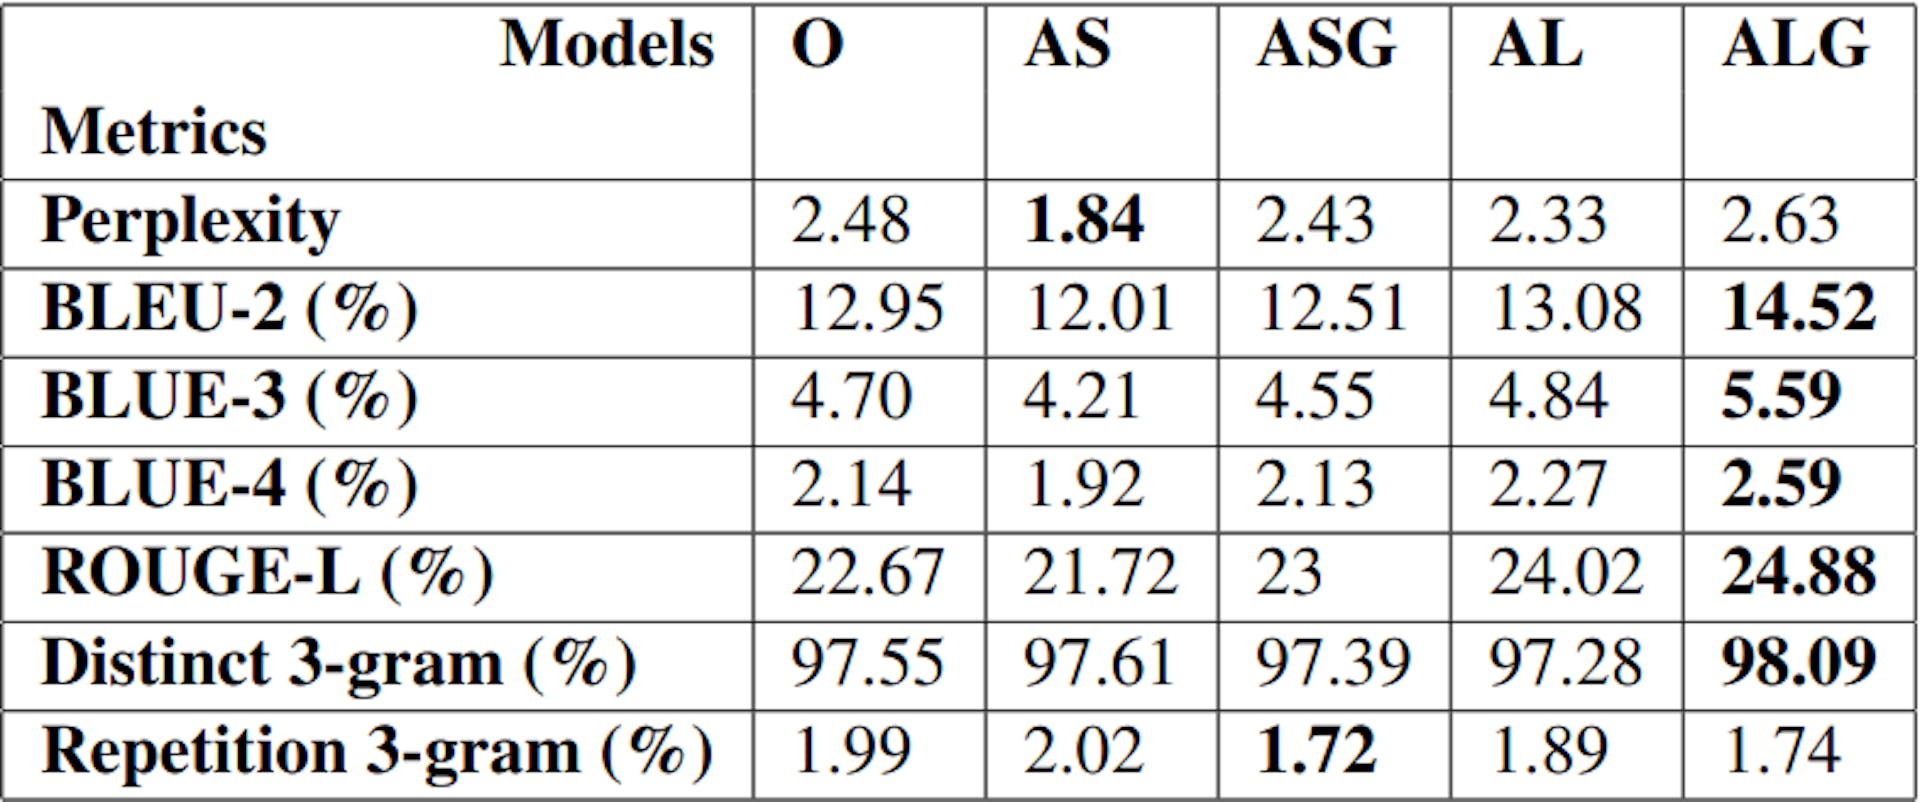 表 1：在 GPT-3 上微调的 5 个好莱坞情节生成模型的常见评估指标得分为 O、AS、ASG、AL、ALG（5.1）